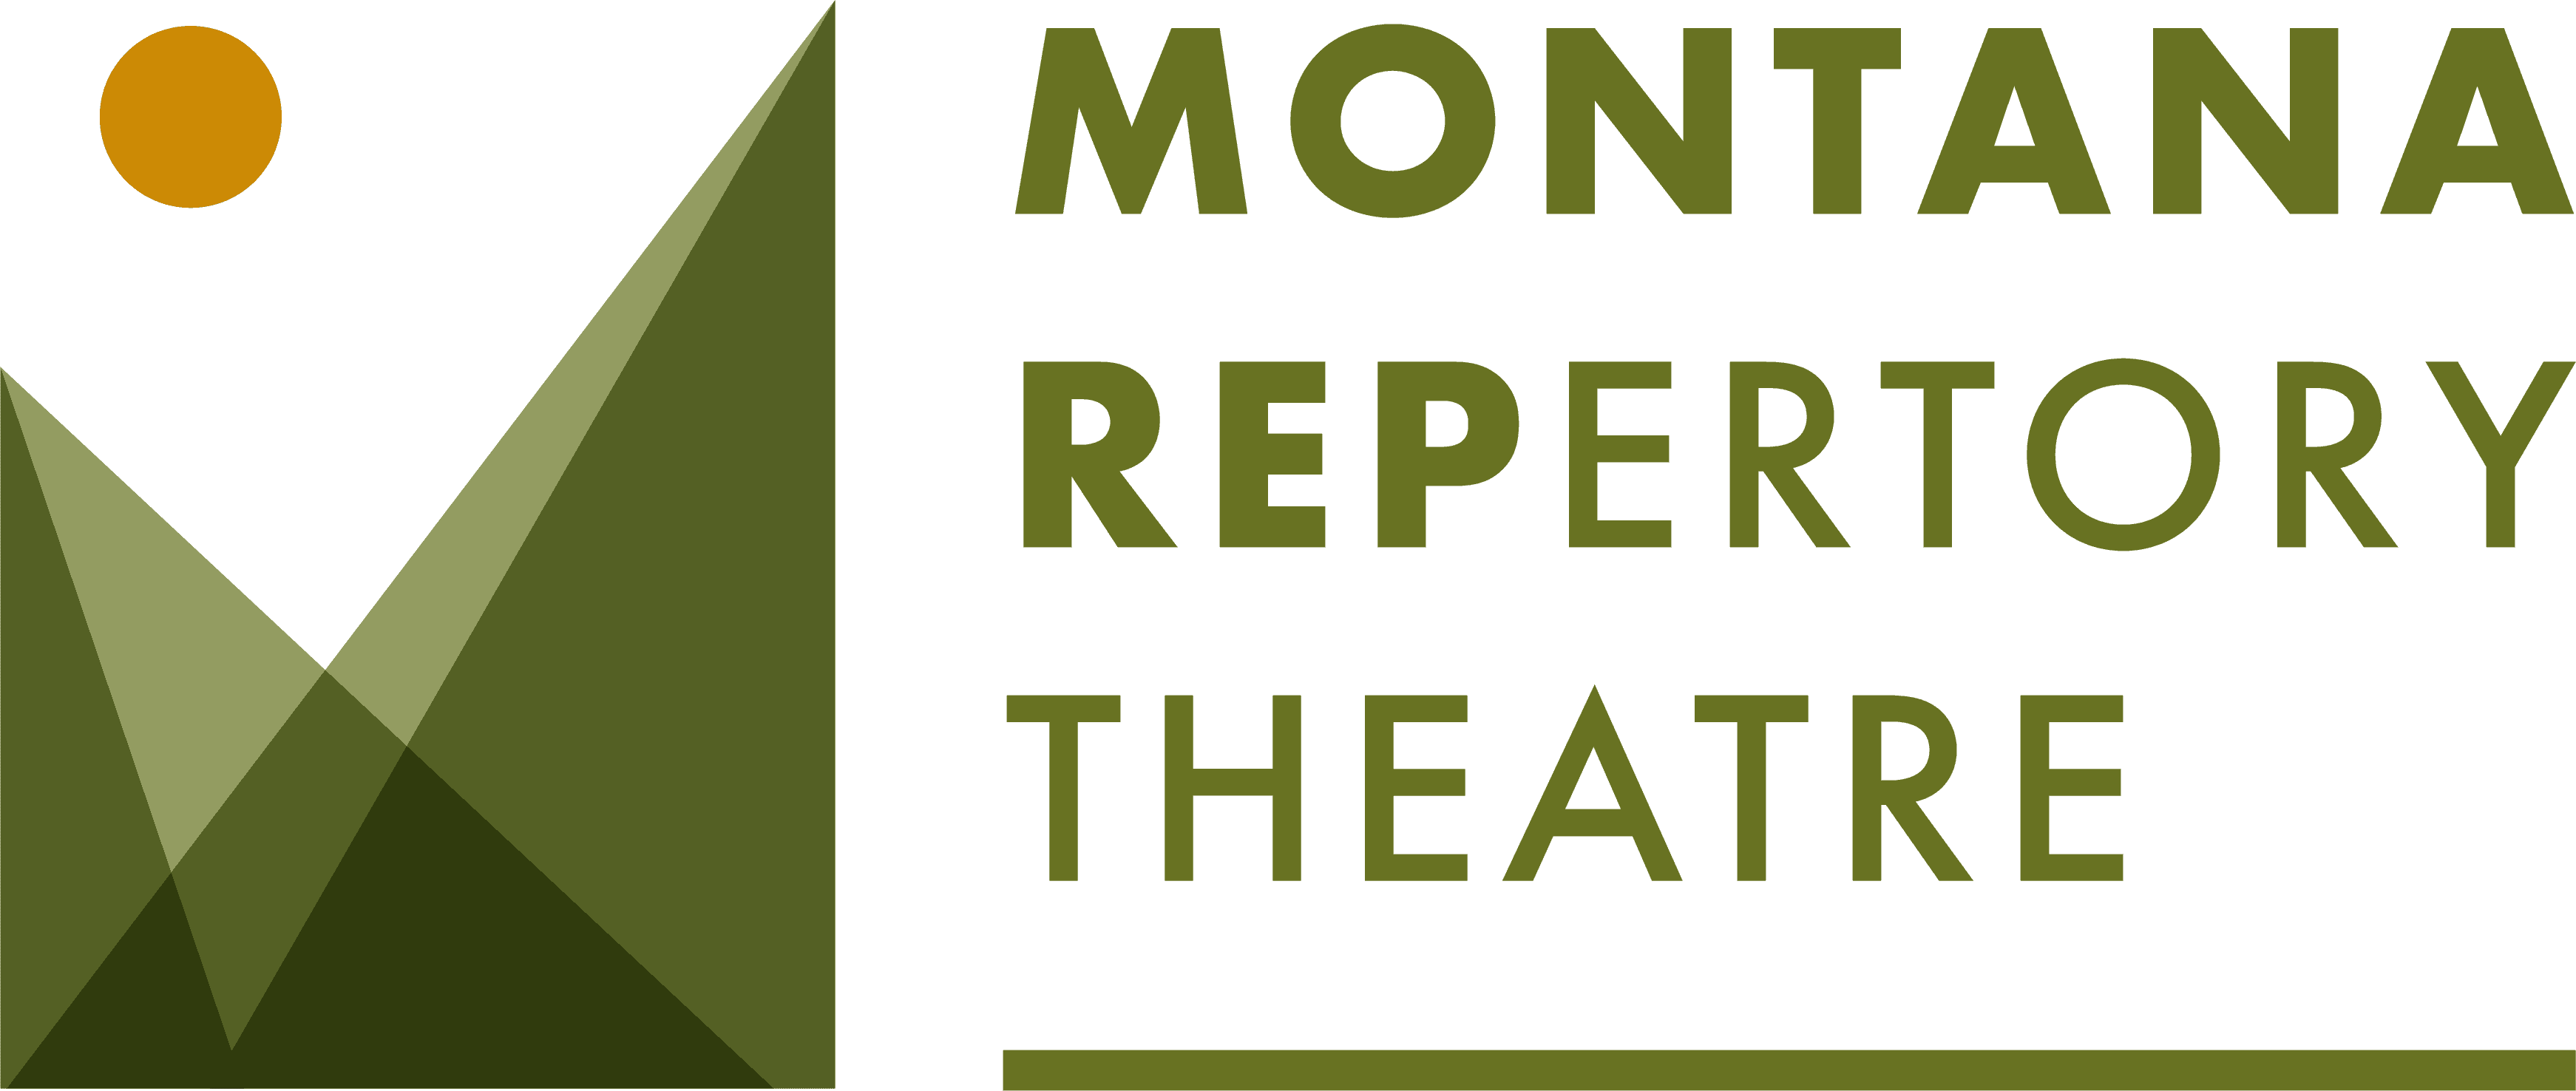 Montana Repertory Theatre logo